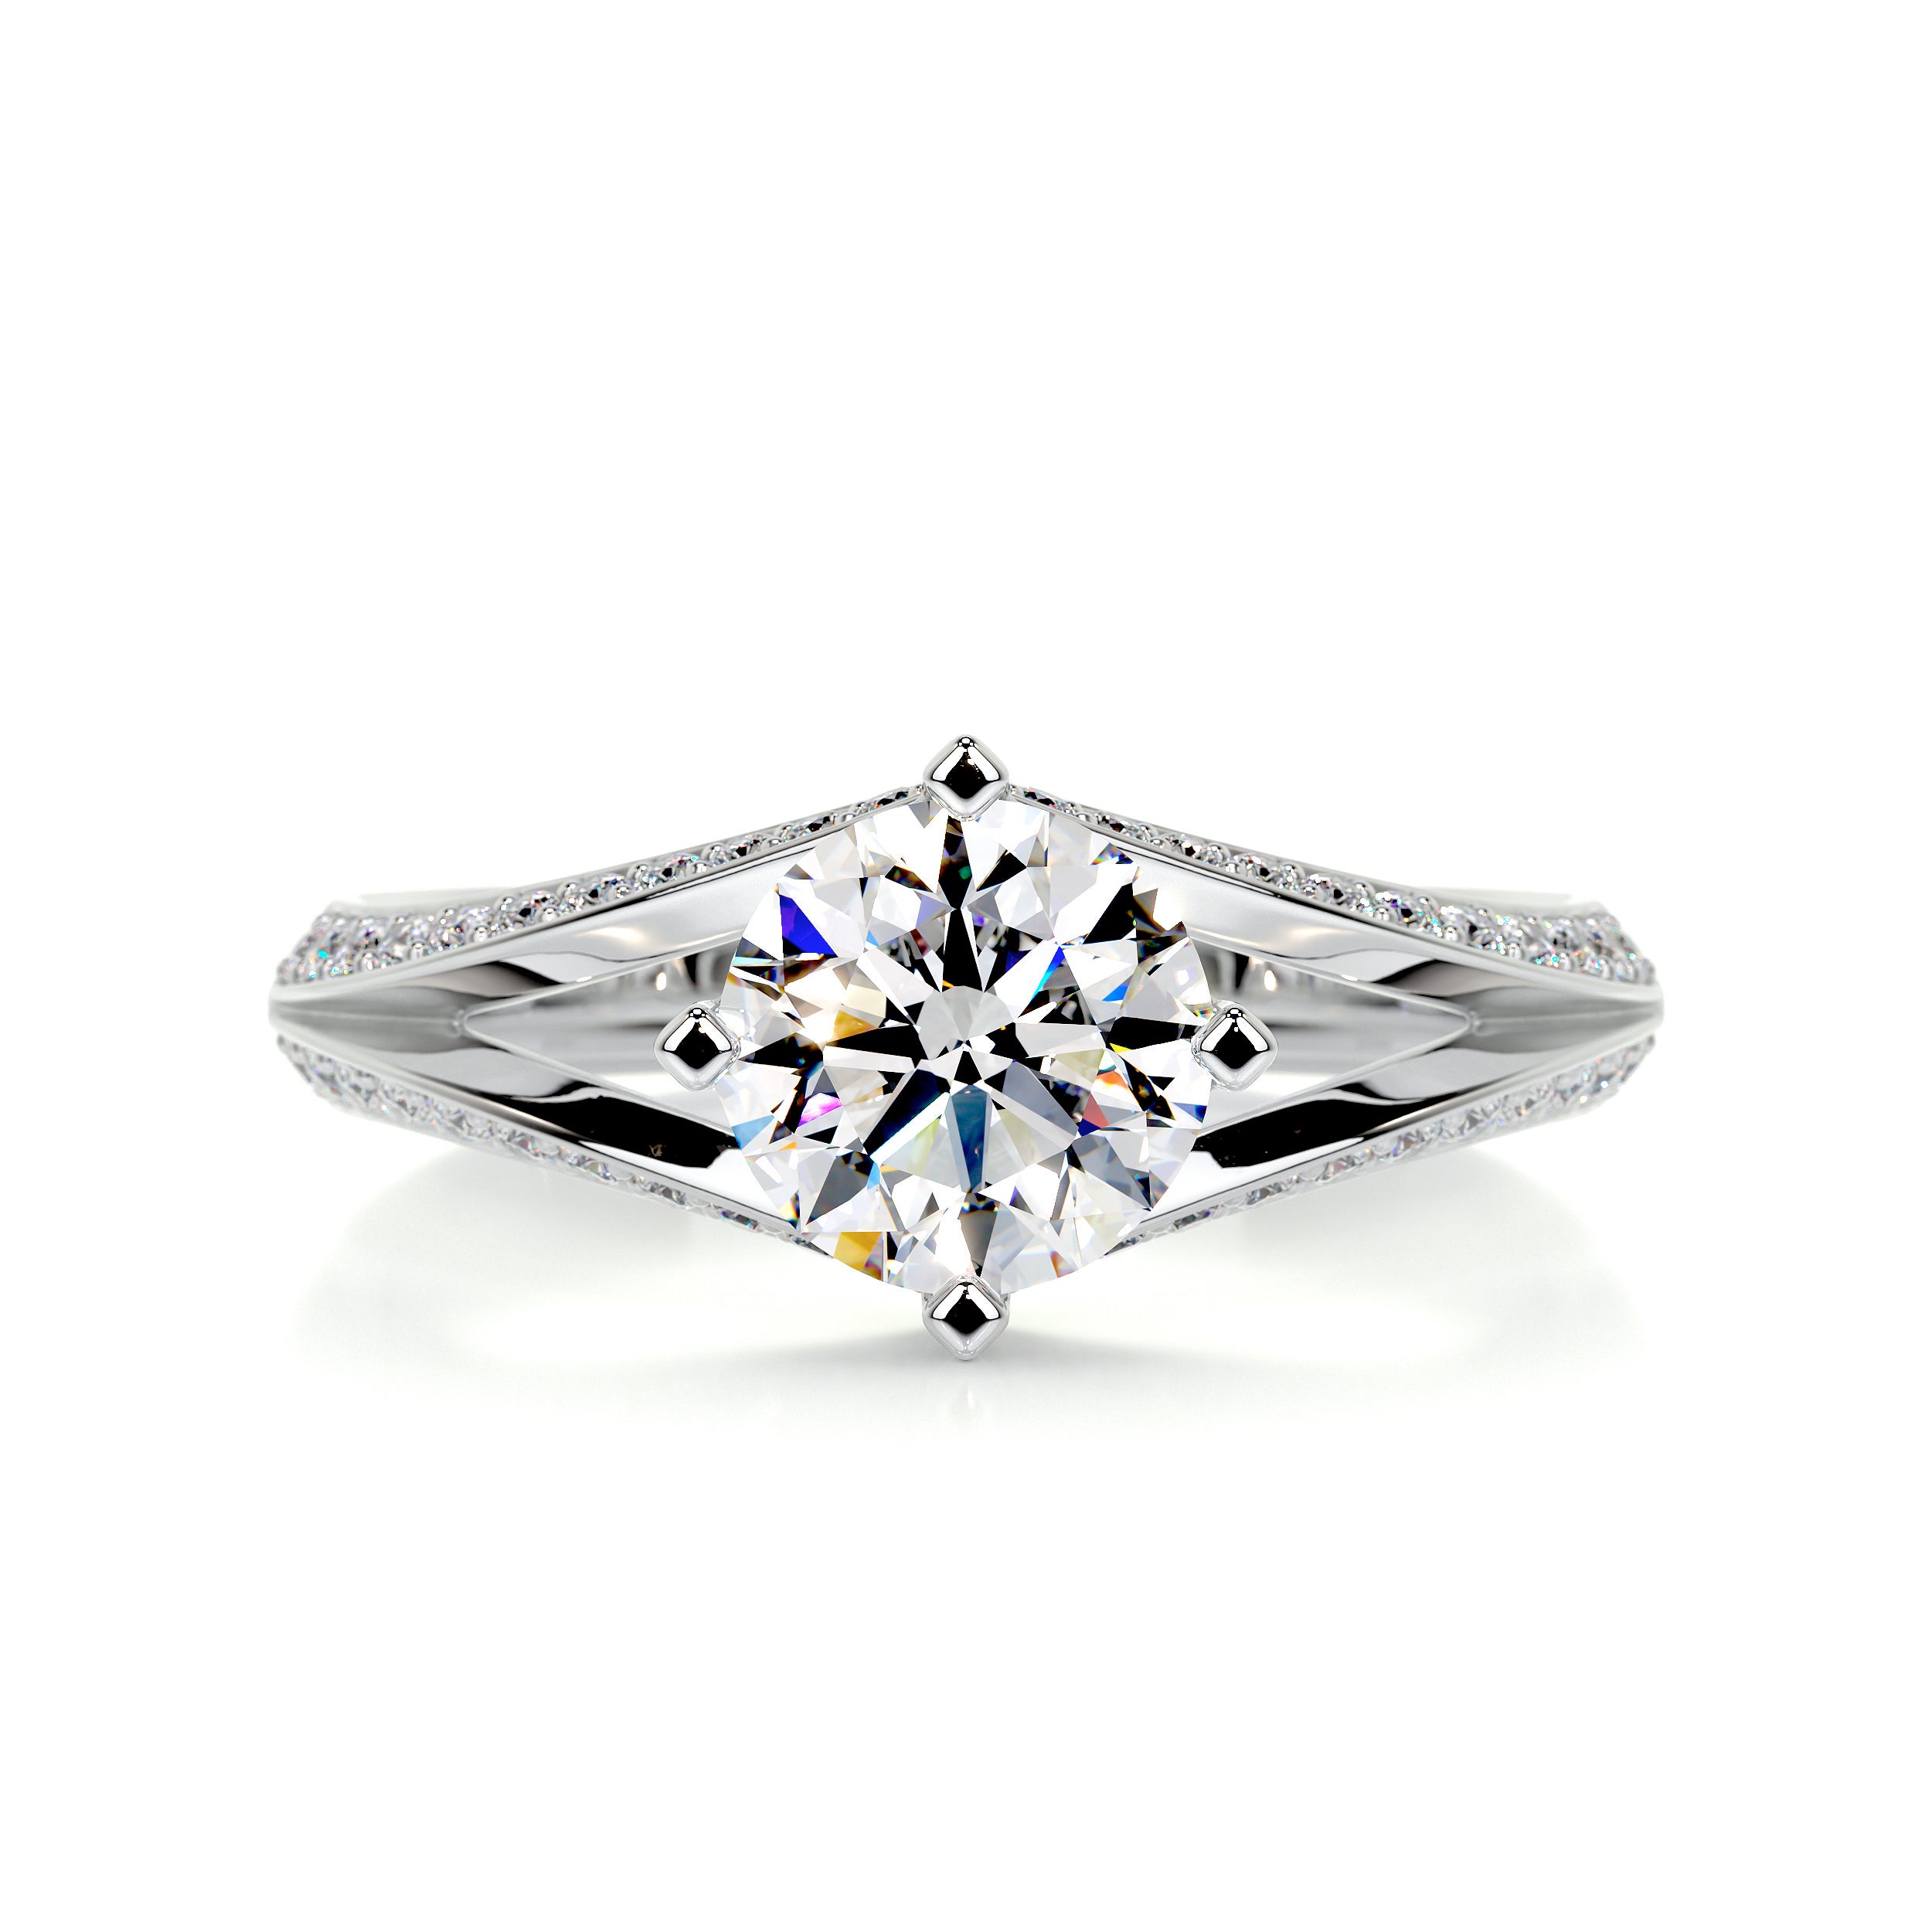 Harlow Moissanite & Diamonds Ring -14K White Gold, Hidden Halo